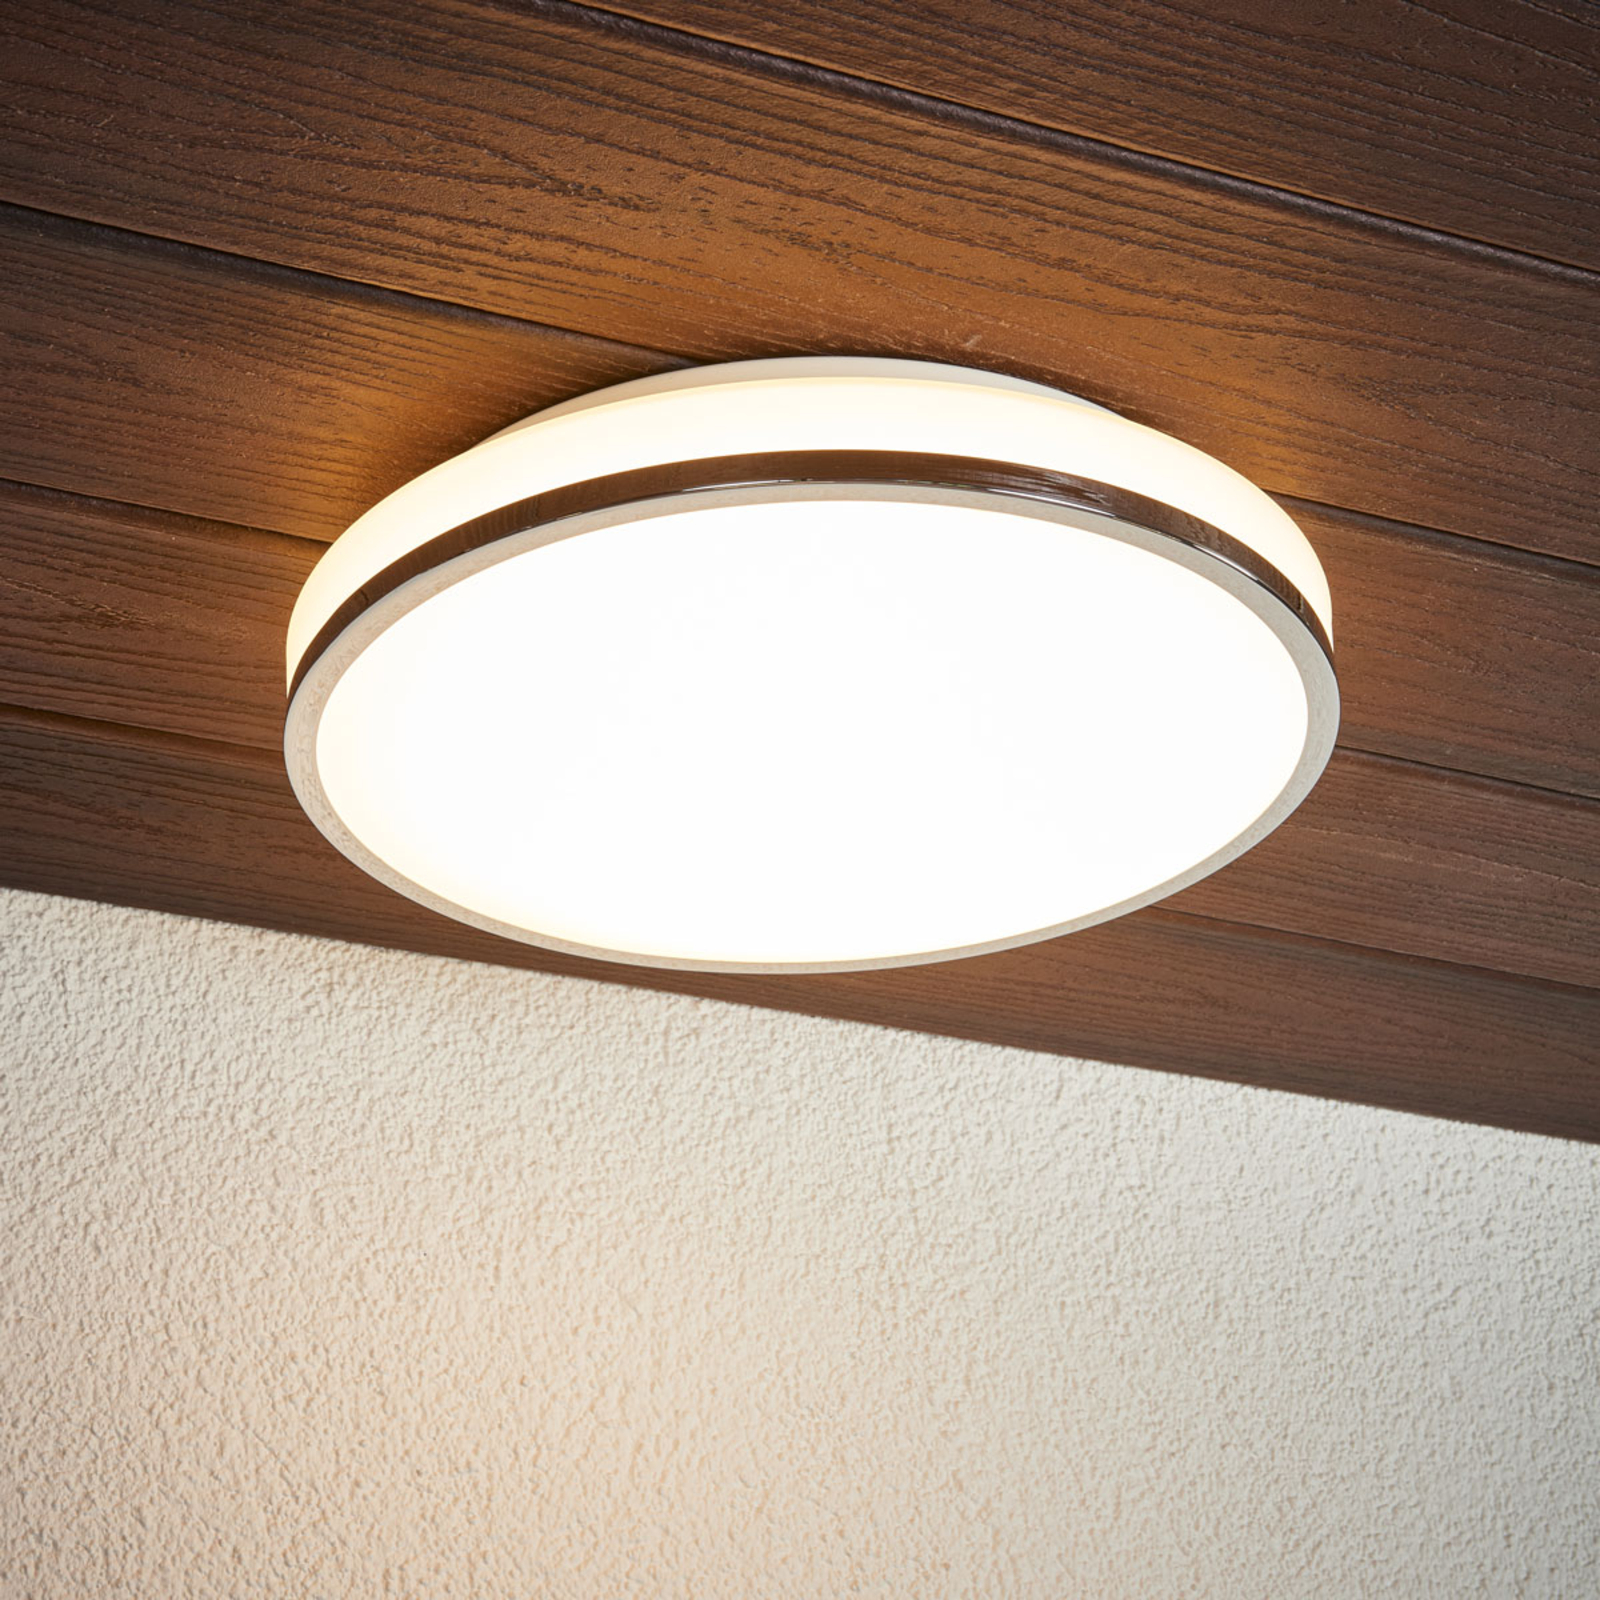 plak naald achter Lyss - LED badkamer plafondlamp met chromen rand | Lampen24.be